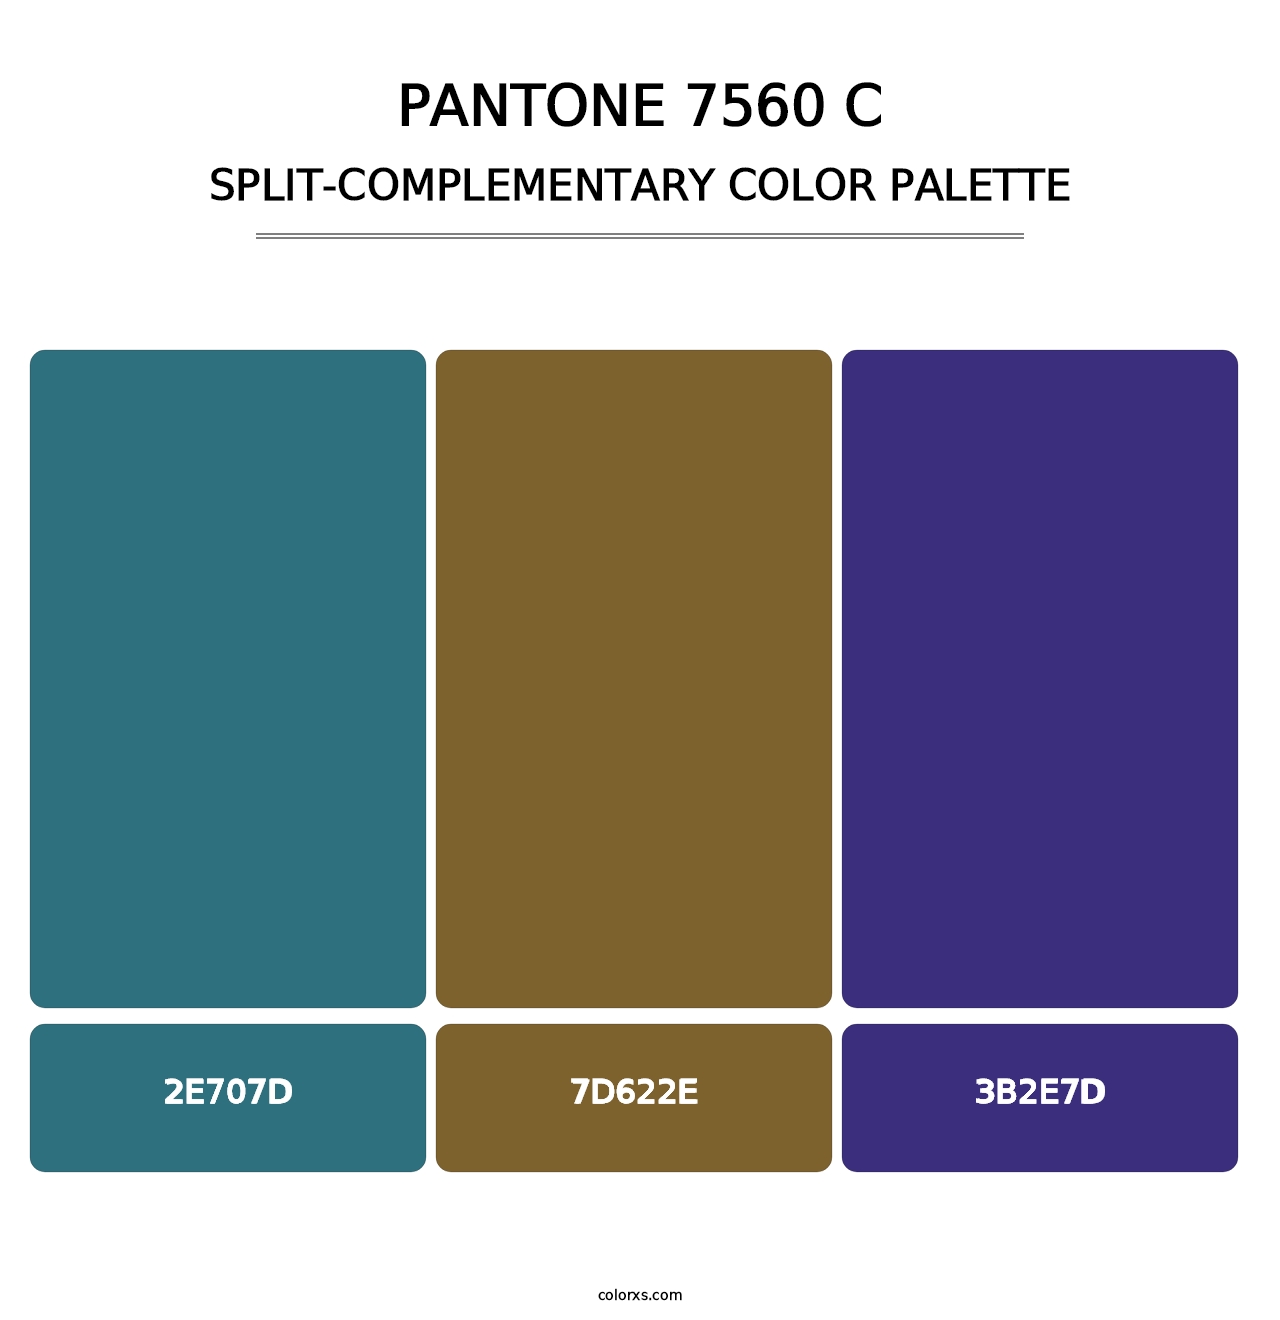 PANTONE 7560 C - Split-Complementary Color Palette